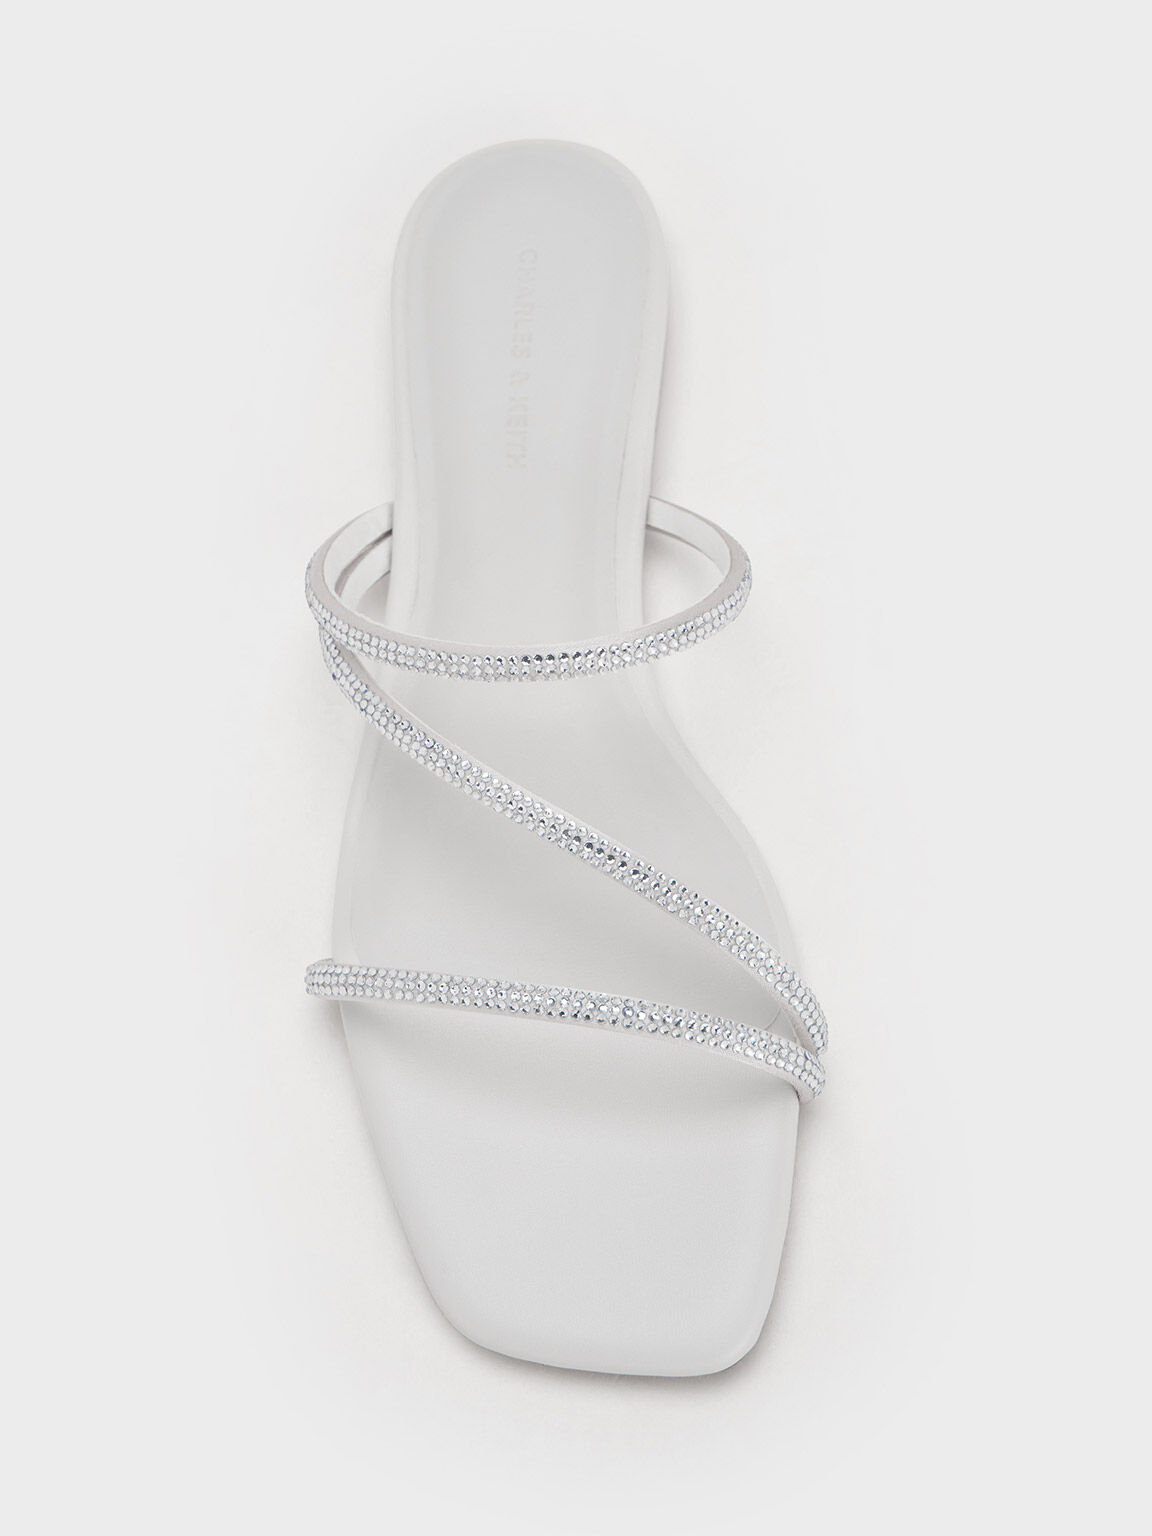 Sandal Strappy Satin Crystal-Embellished, White, hi-res